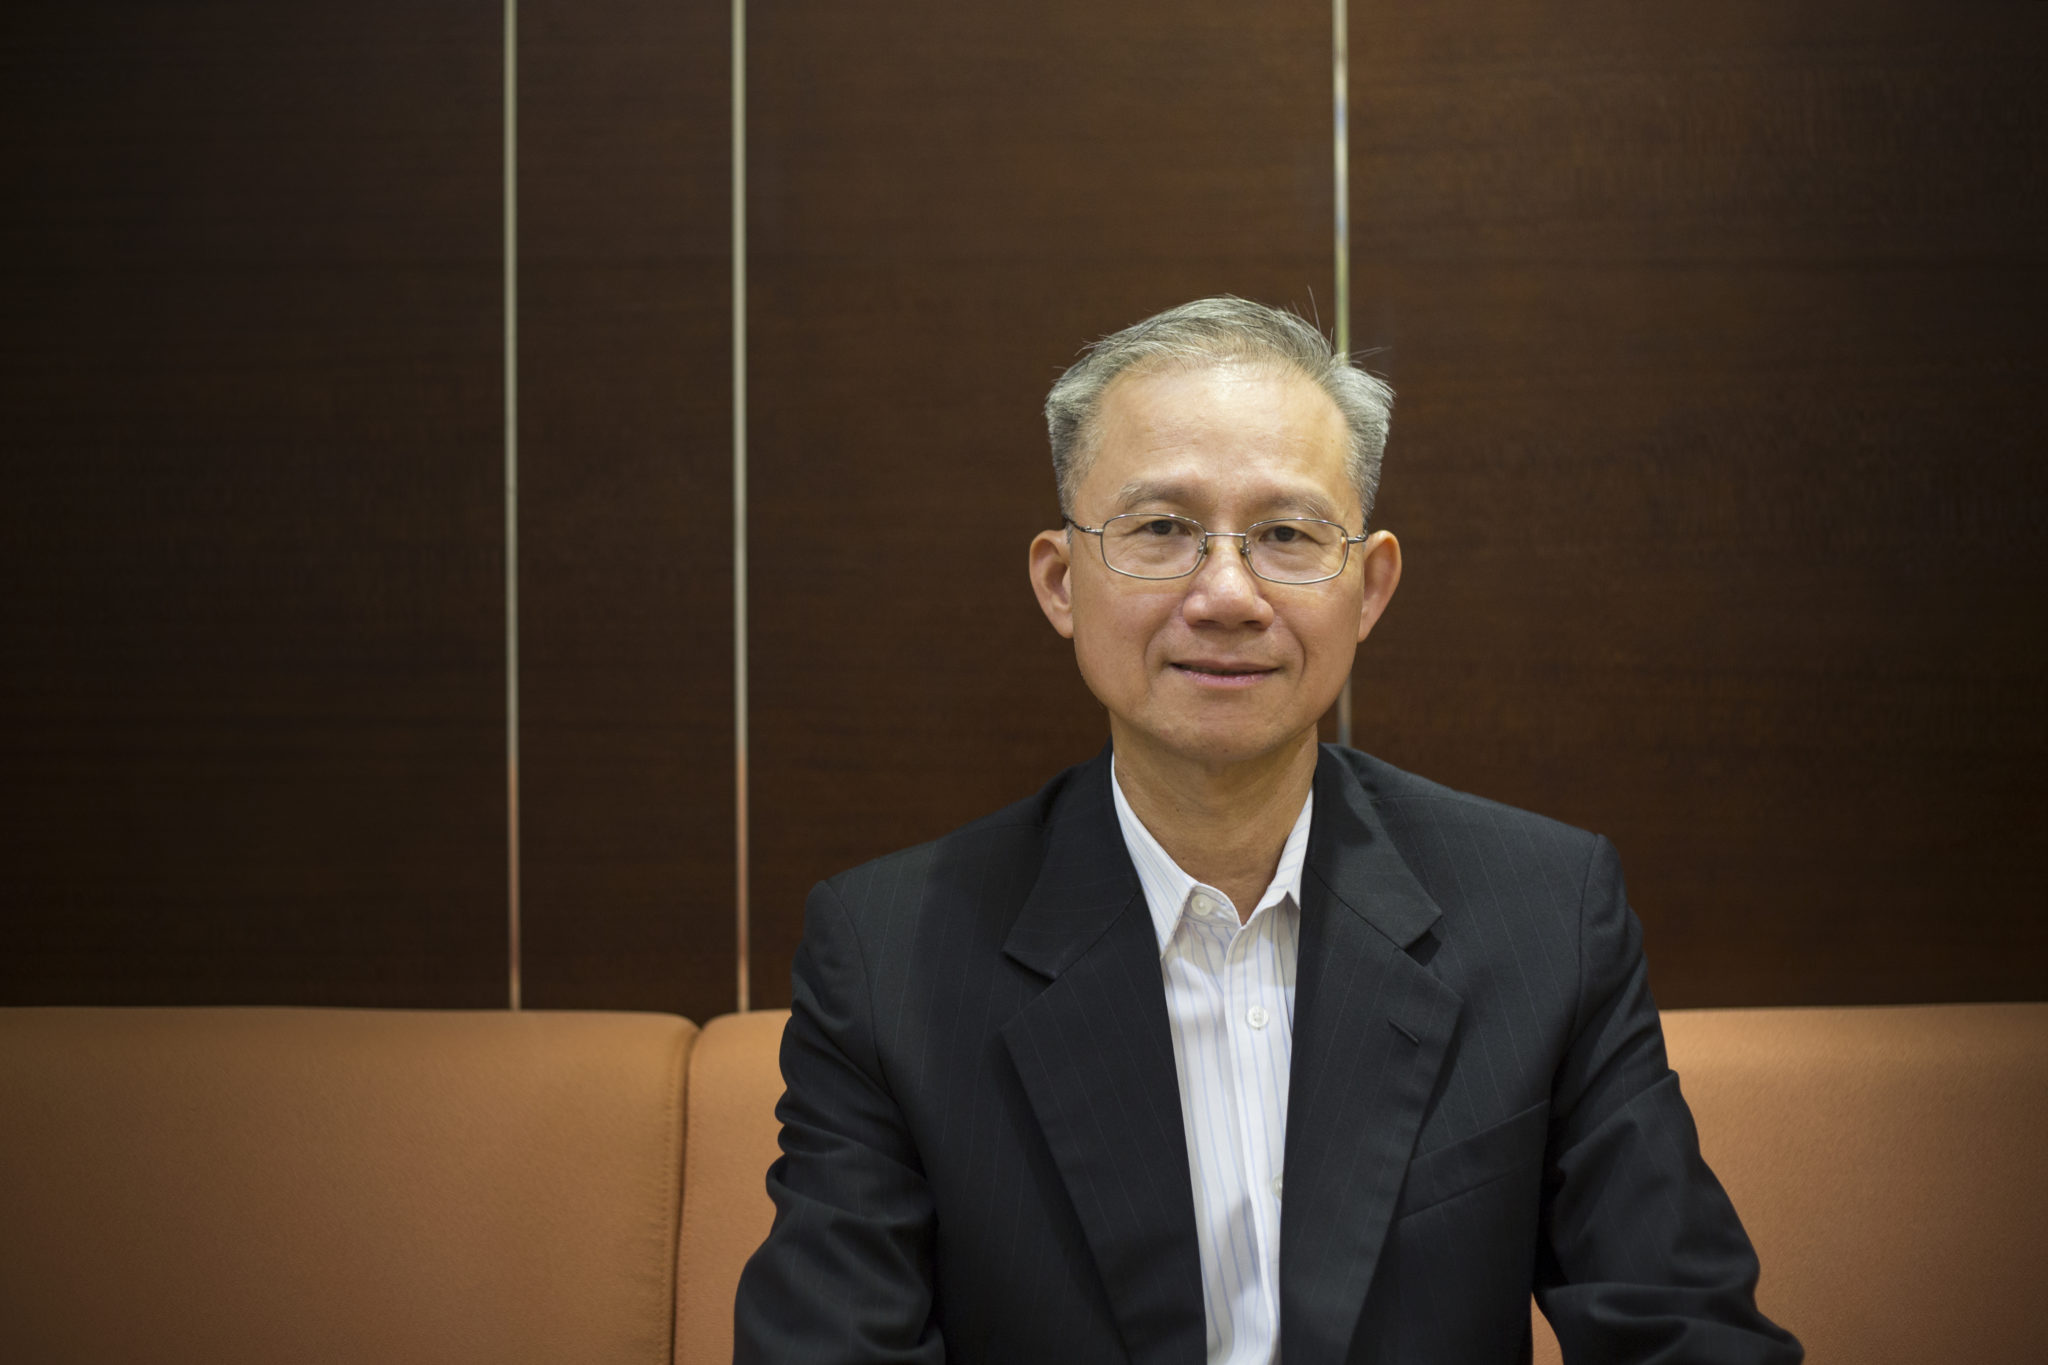 Advogados | Vong Hin Fai acredita na expansão para a Grande Baía